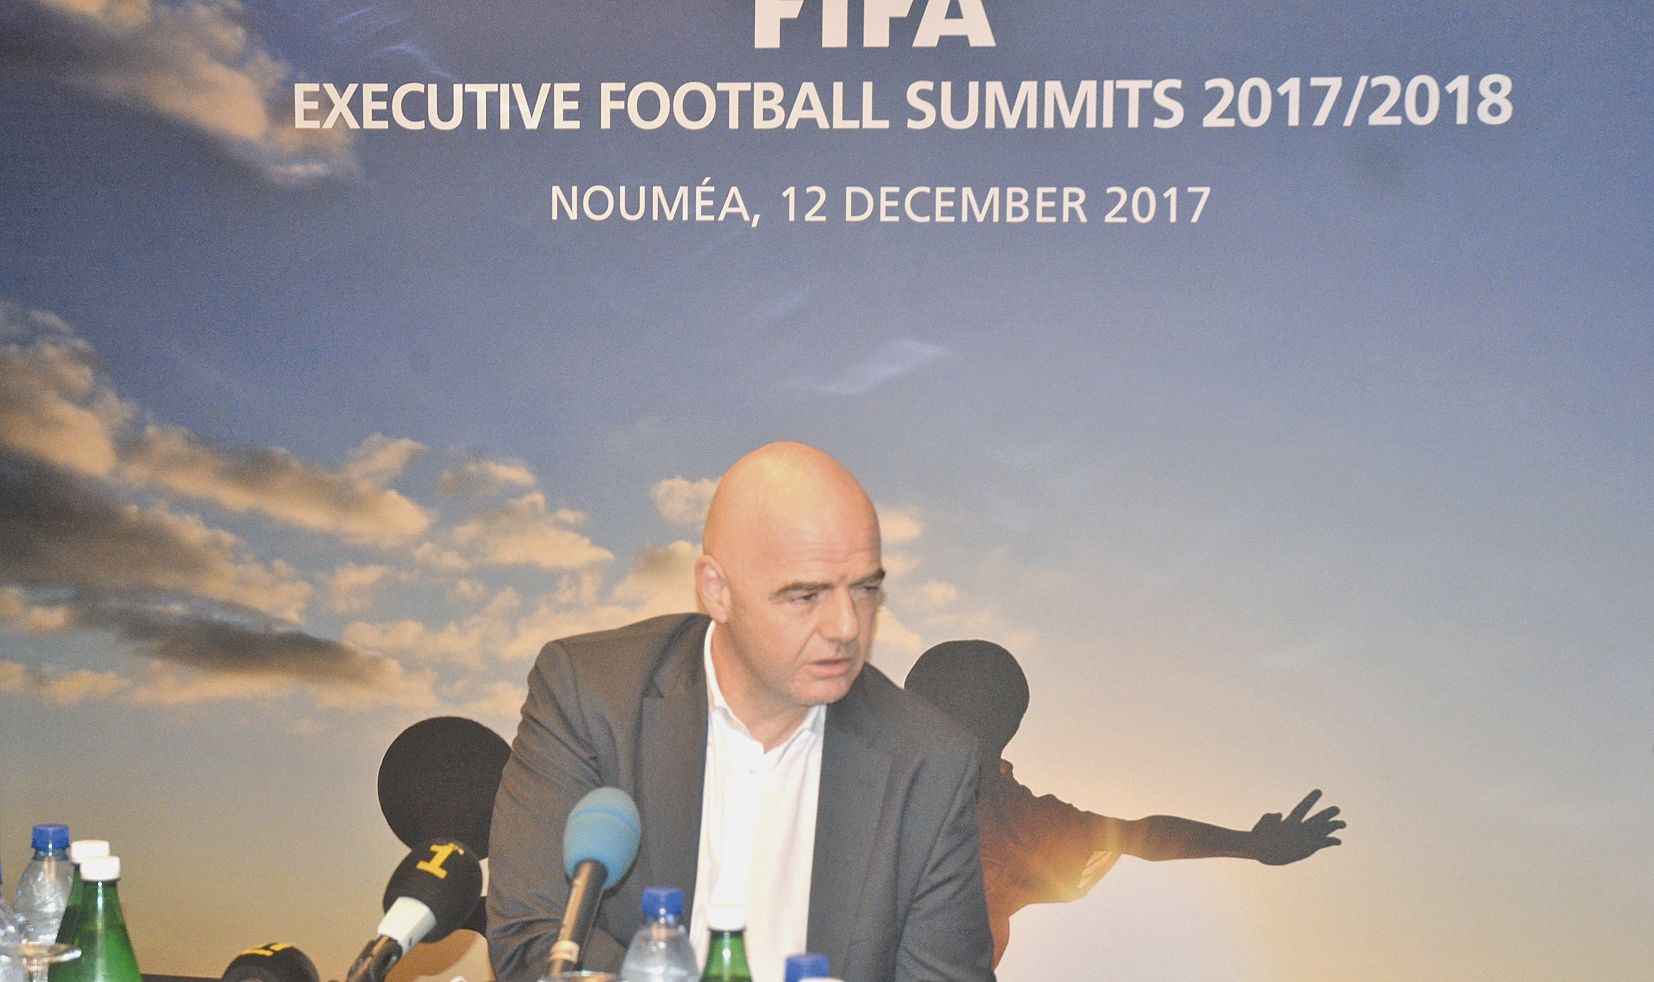 Gianni Infantino, le président de la Fédération internationale de football association (FIFA), lors de sa conférence de presse donnée mardi soir dans un grand hôtel de Nouméa.